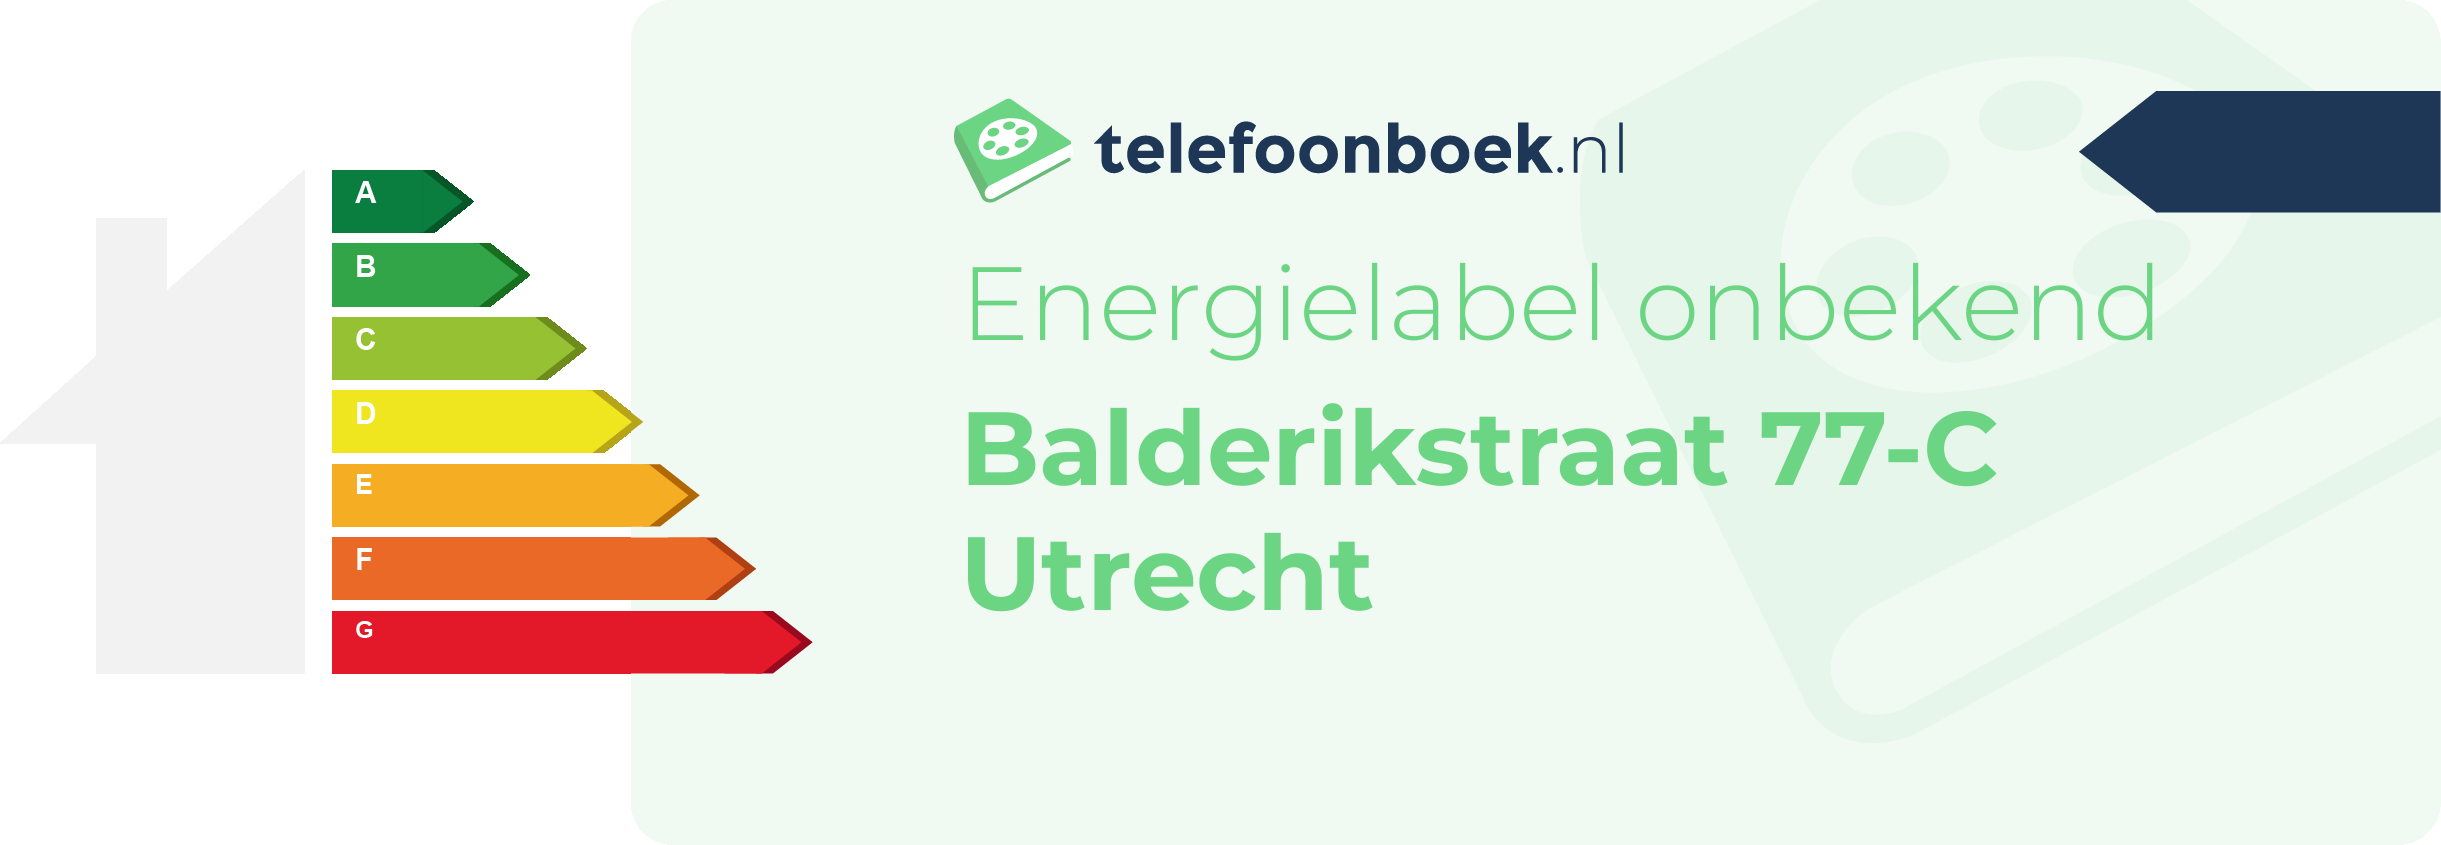 Energielabel Balderikstraat 77-C Utrecht